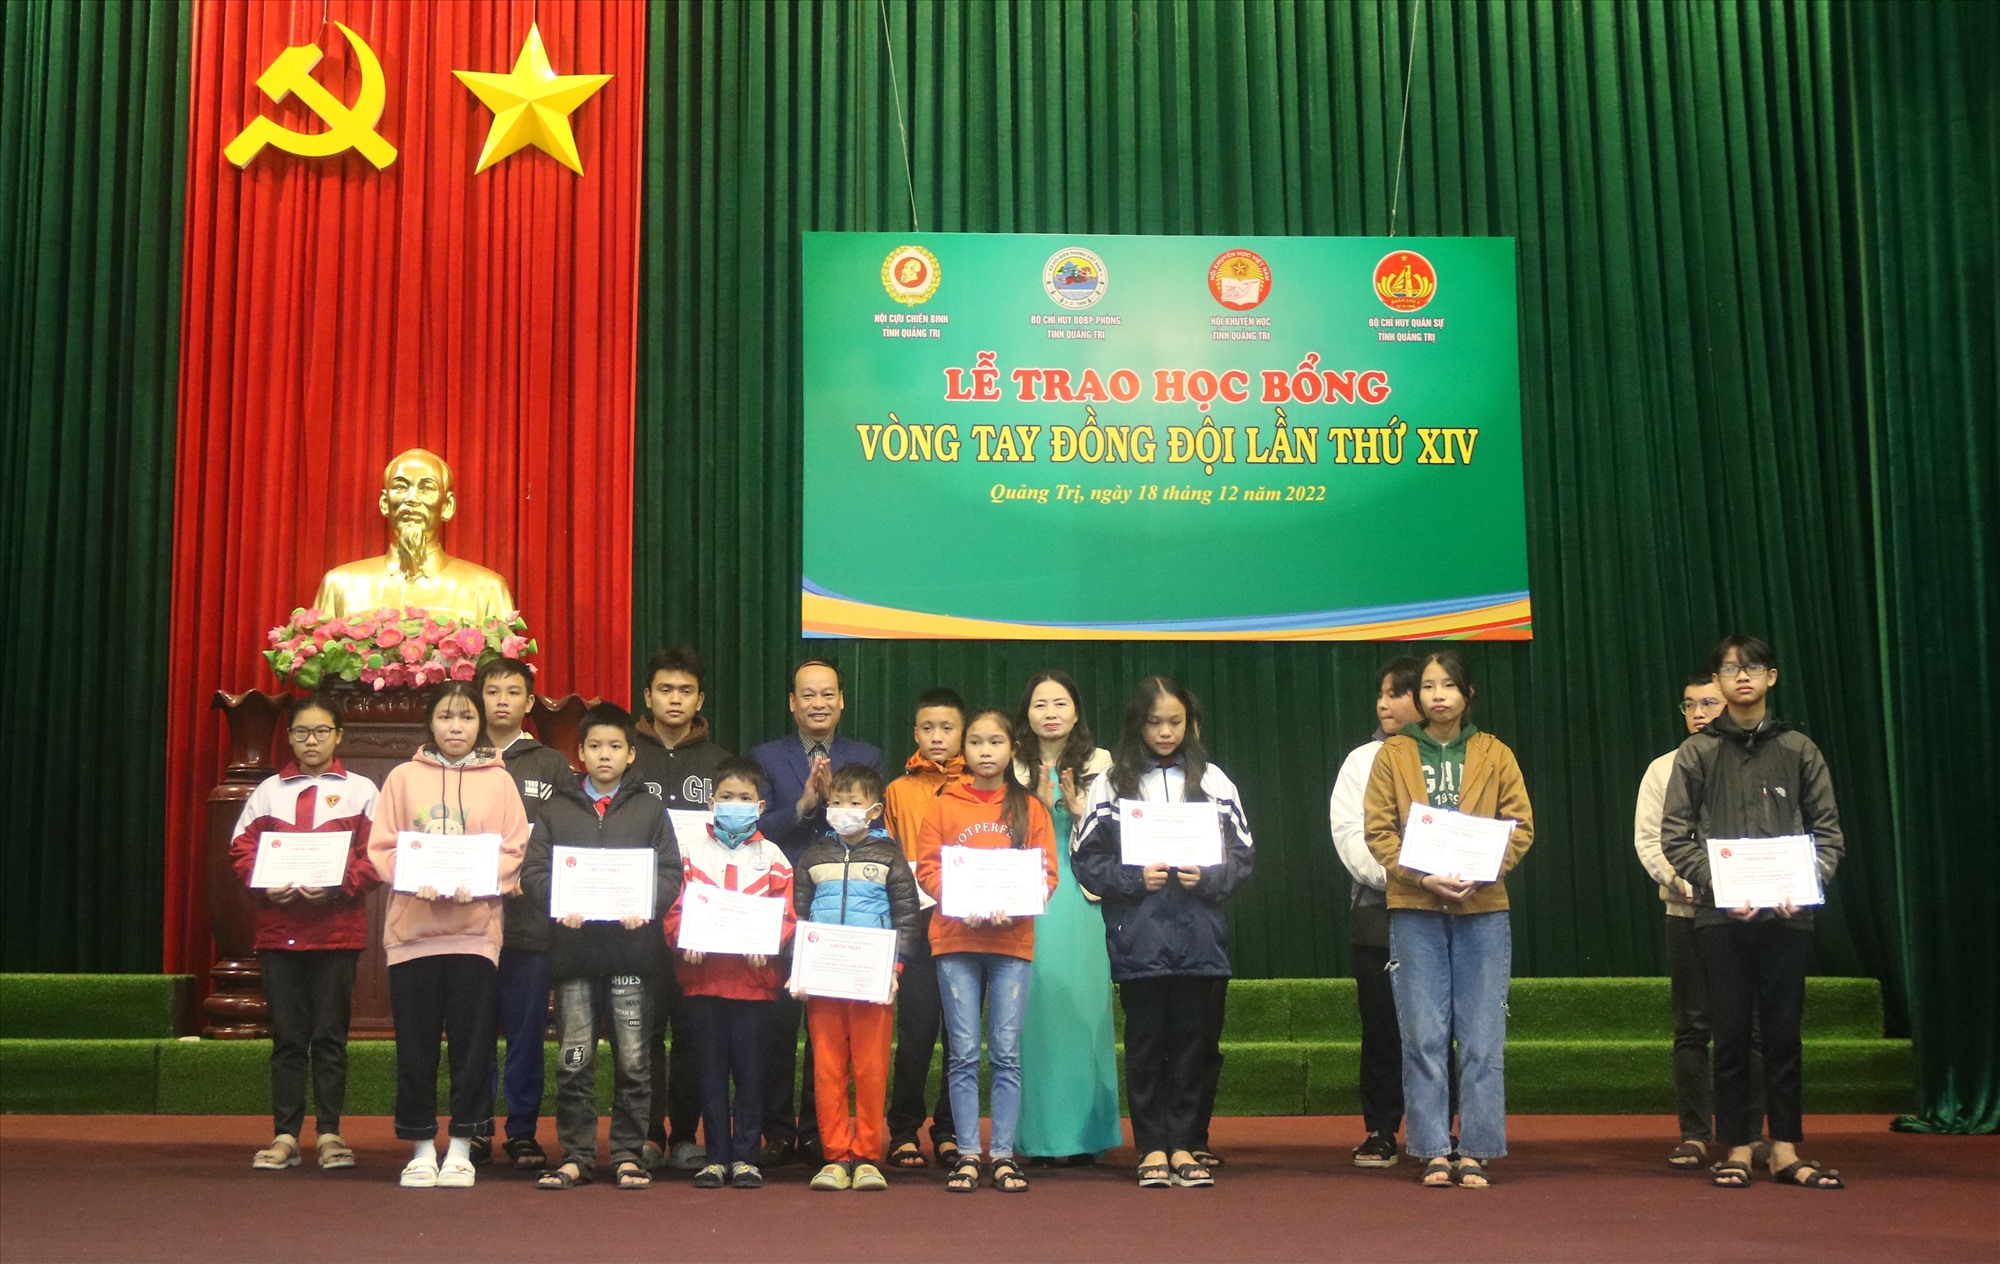 Trao học bổng từ Quỹ học bổng Khuyến học Hội Cựu chiến binh Việt Nam cho các em học sinh, sinh viên - Ảnh: N.B